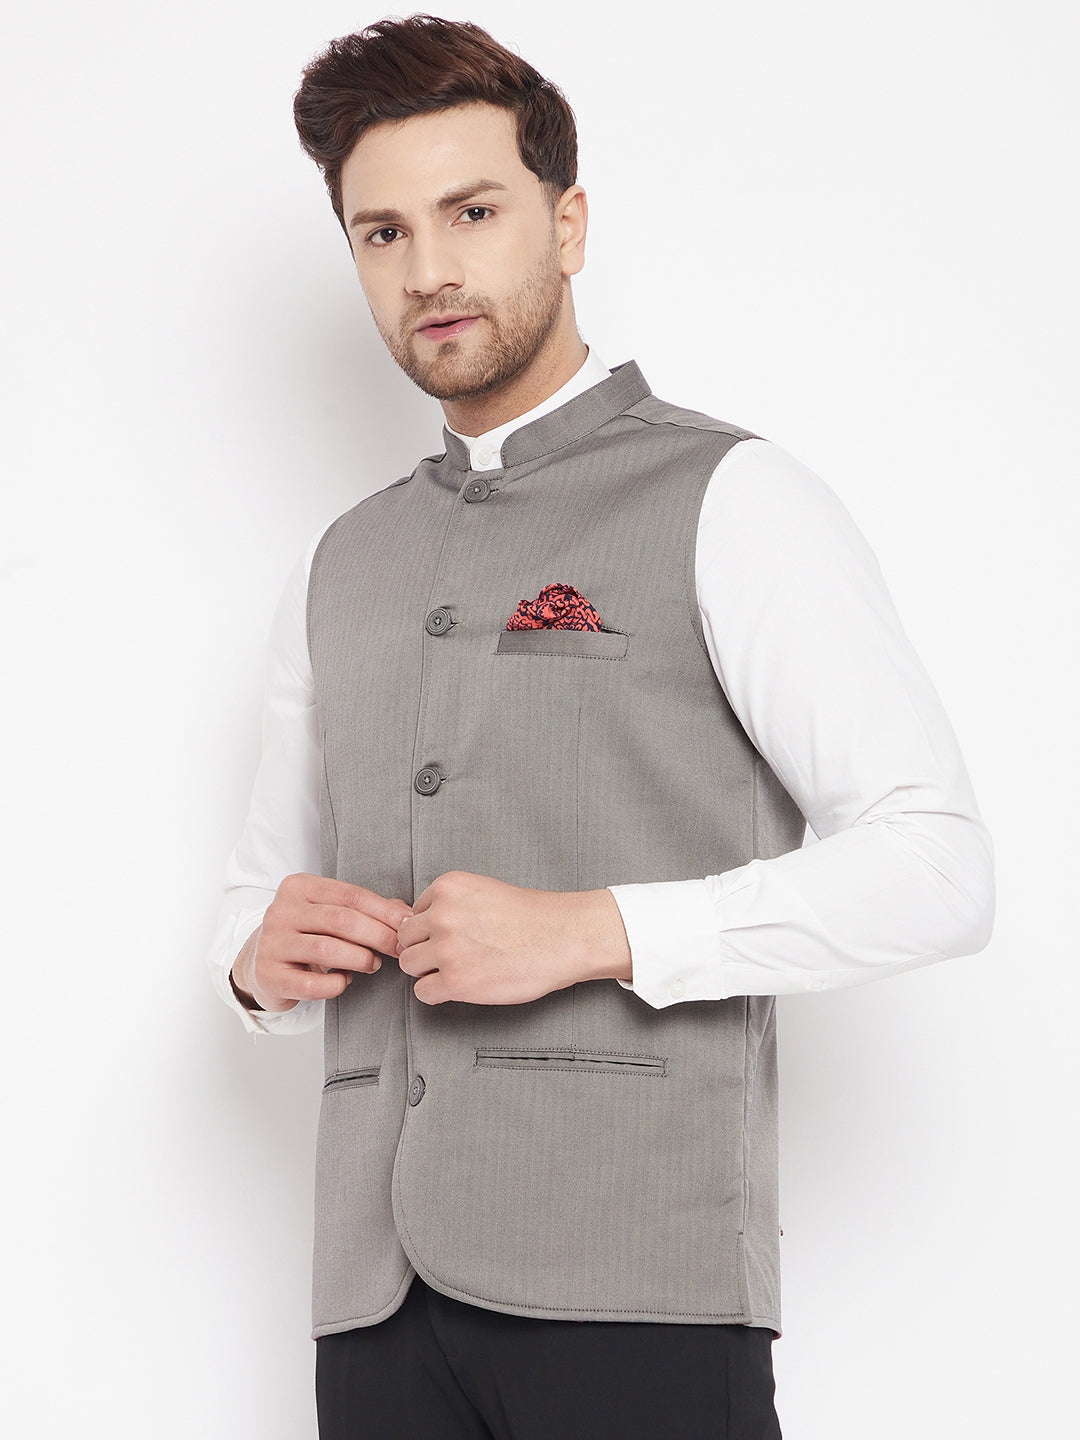 Men's Grey Color Nehru Jacket-Contrast Lining-Inbuilt Pocket Square - Even Apparels